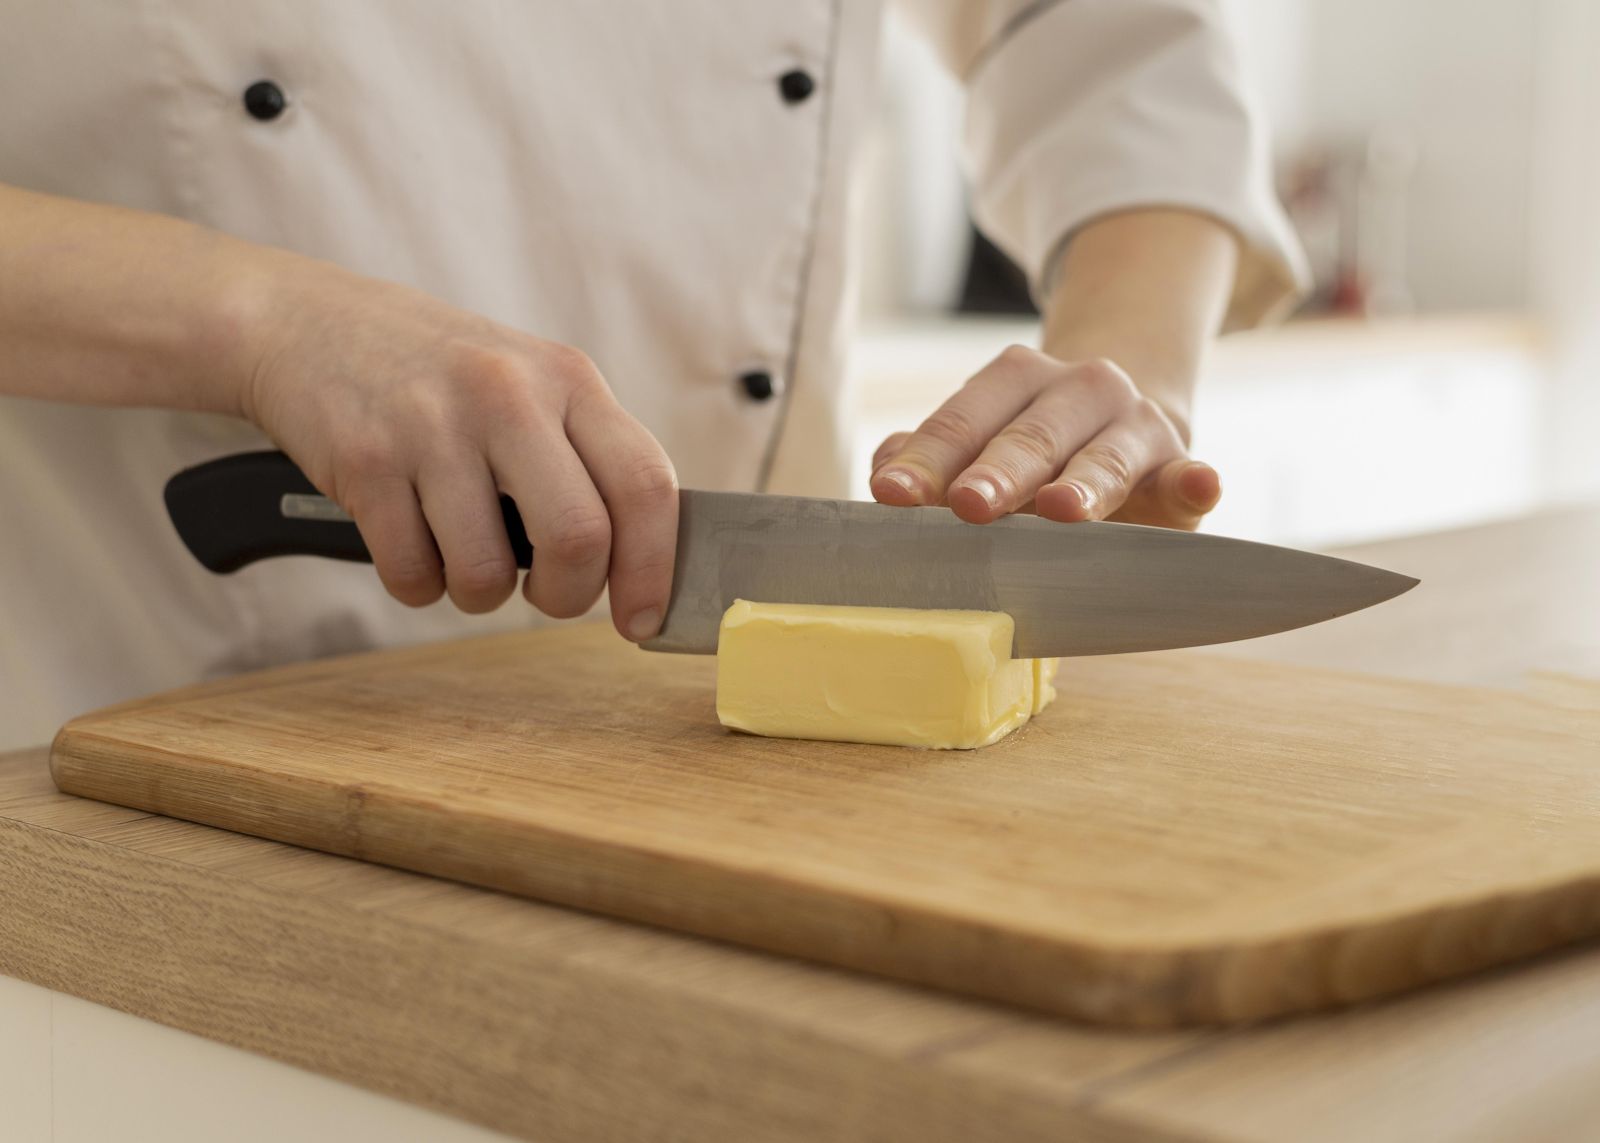 Cómo conservar el queso (según el tipo) sin que se estropee con